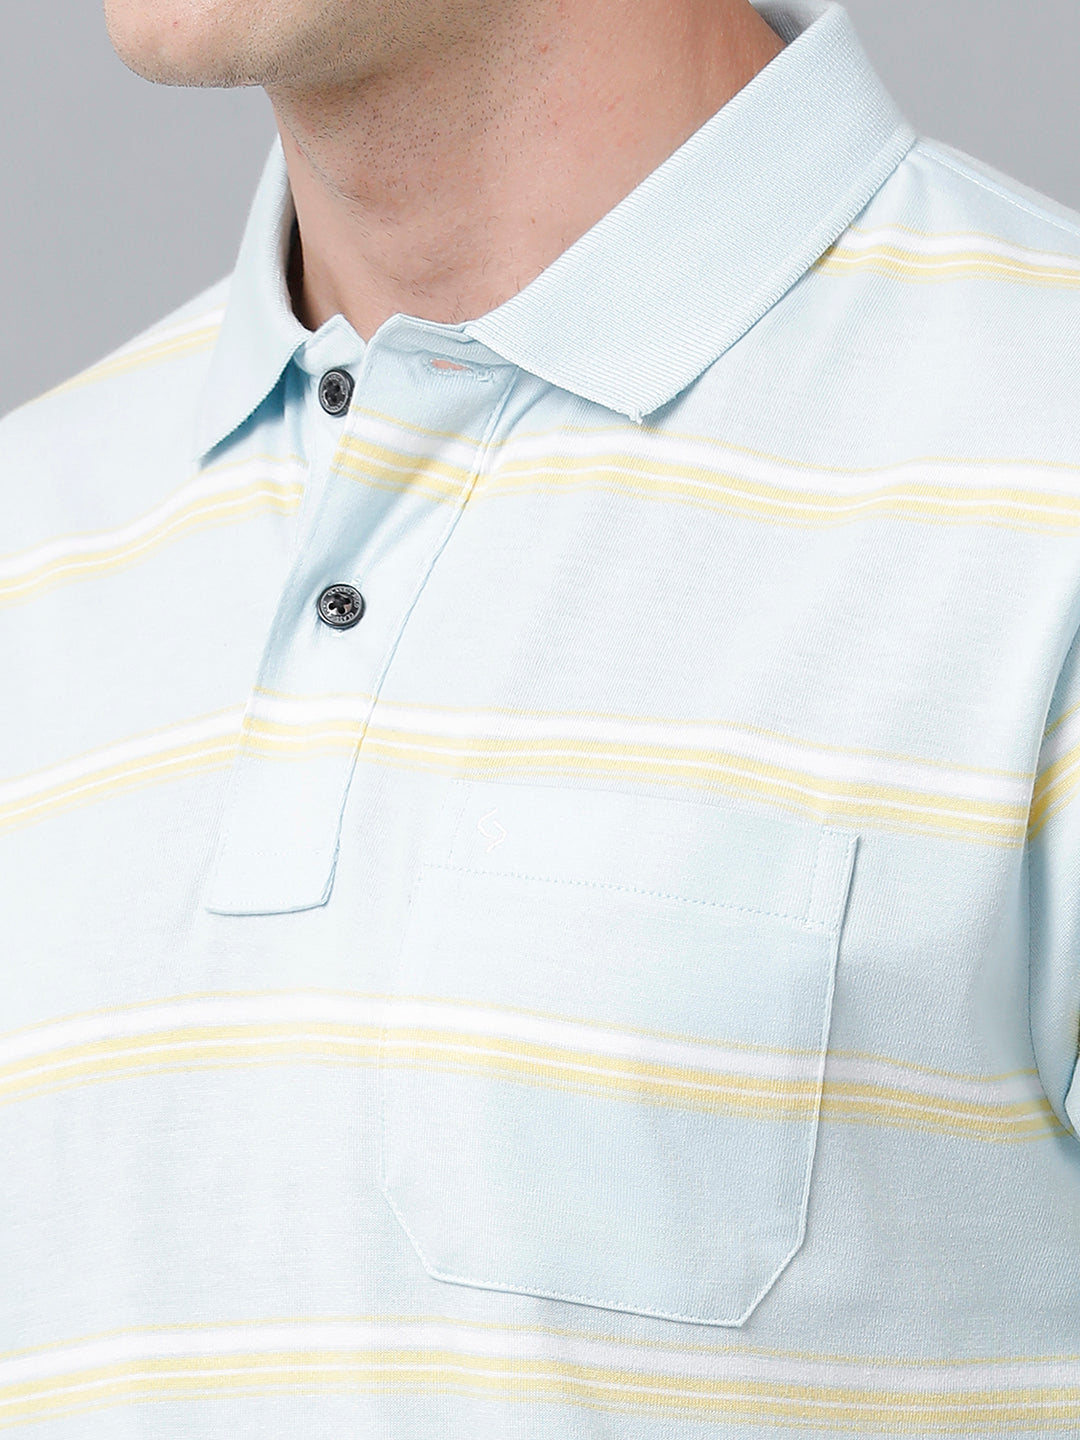 Classic Polo Men's Cotton Blend Half Sleeve Striped Authentic Fit Polo Neck Light Blue Color T-Shirt | Avon - 514 B